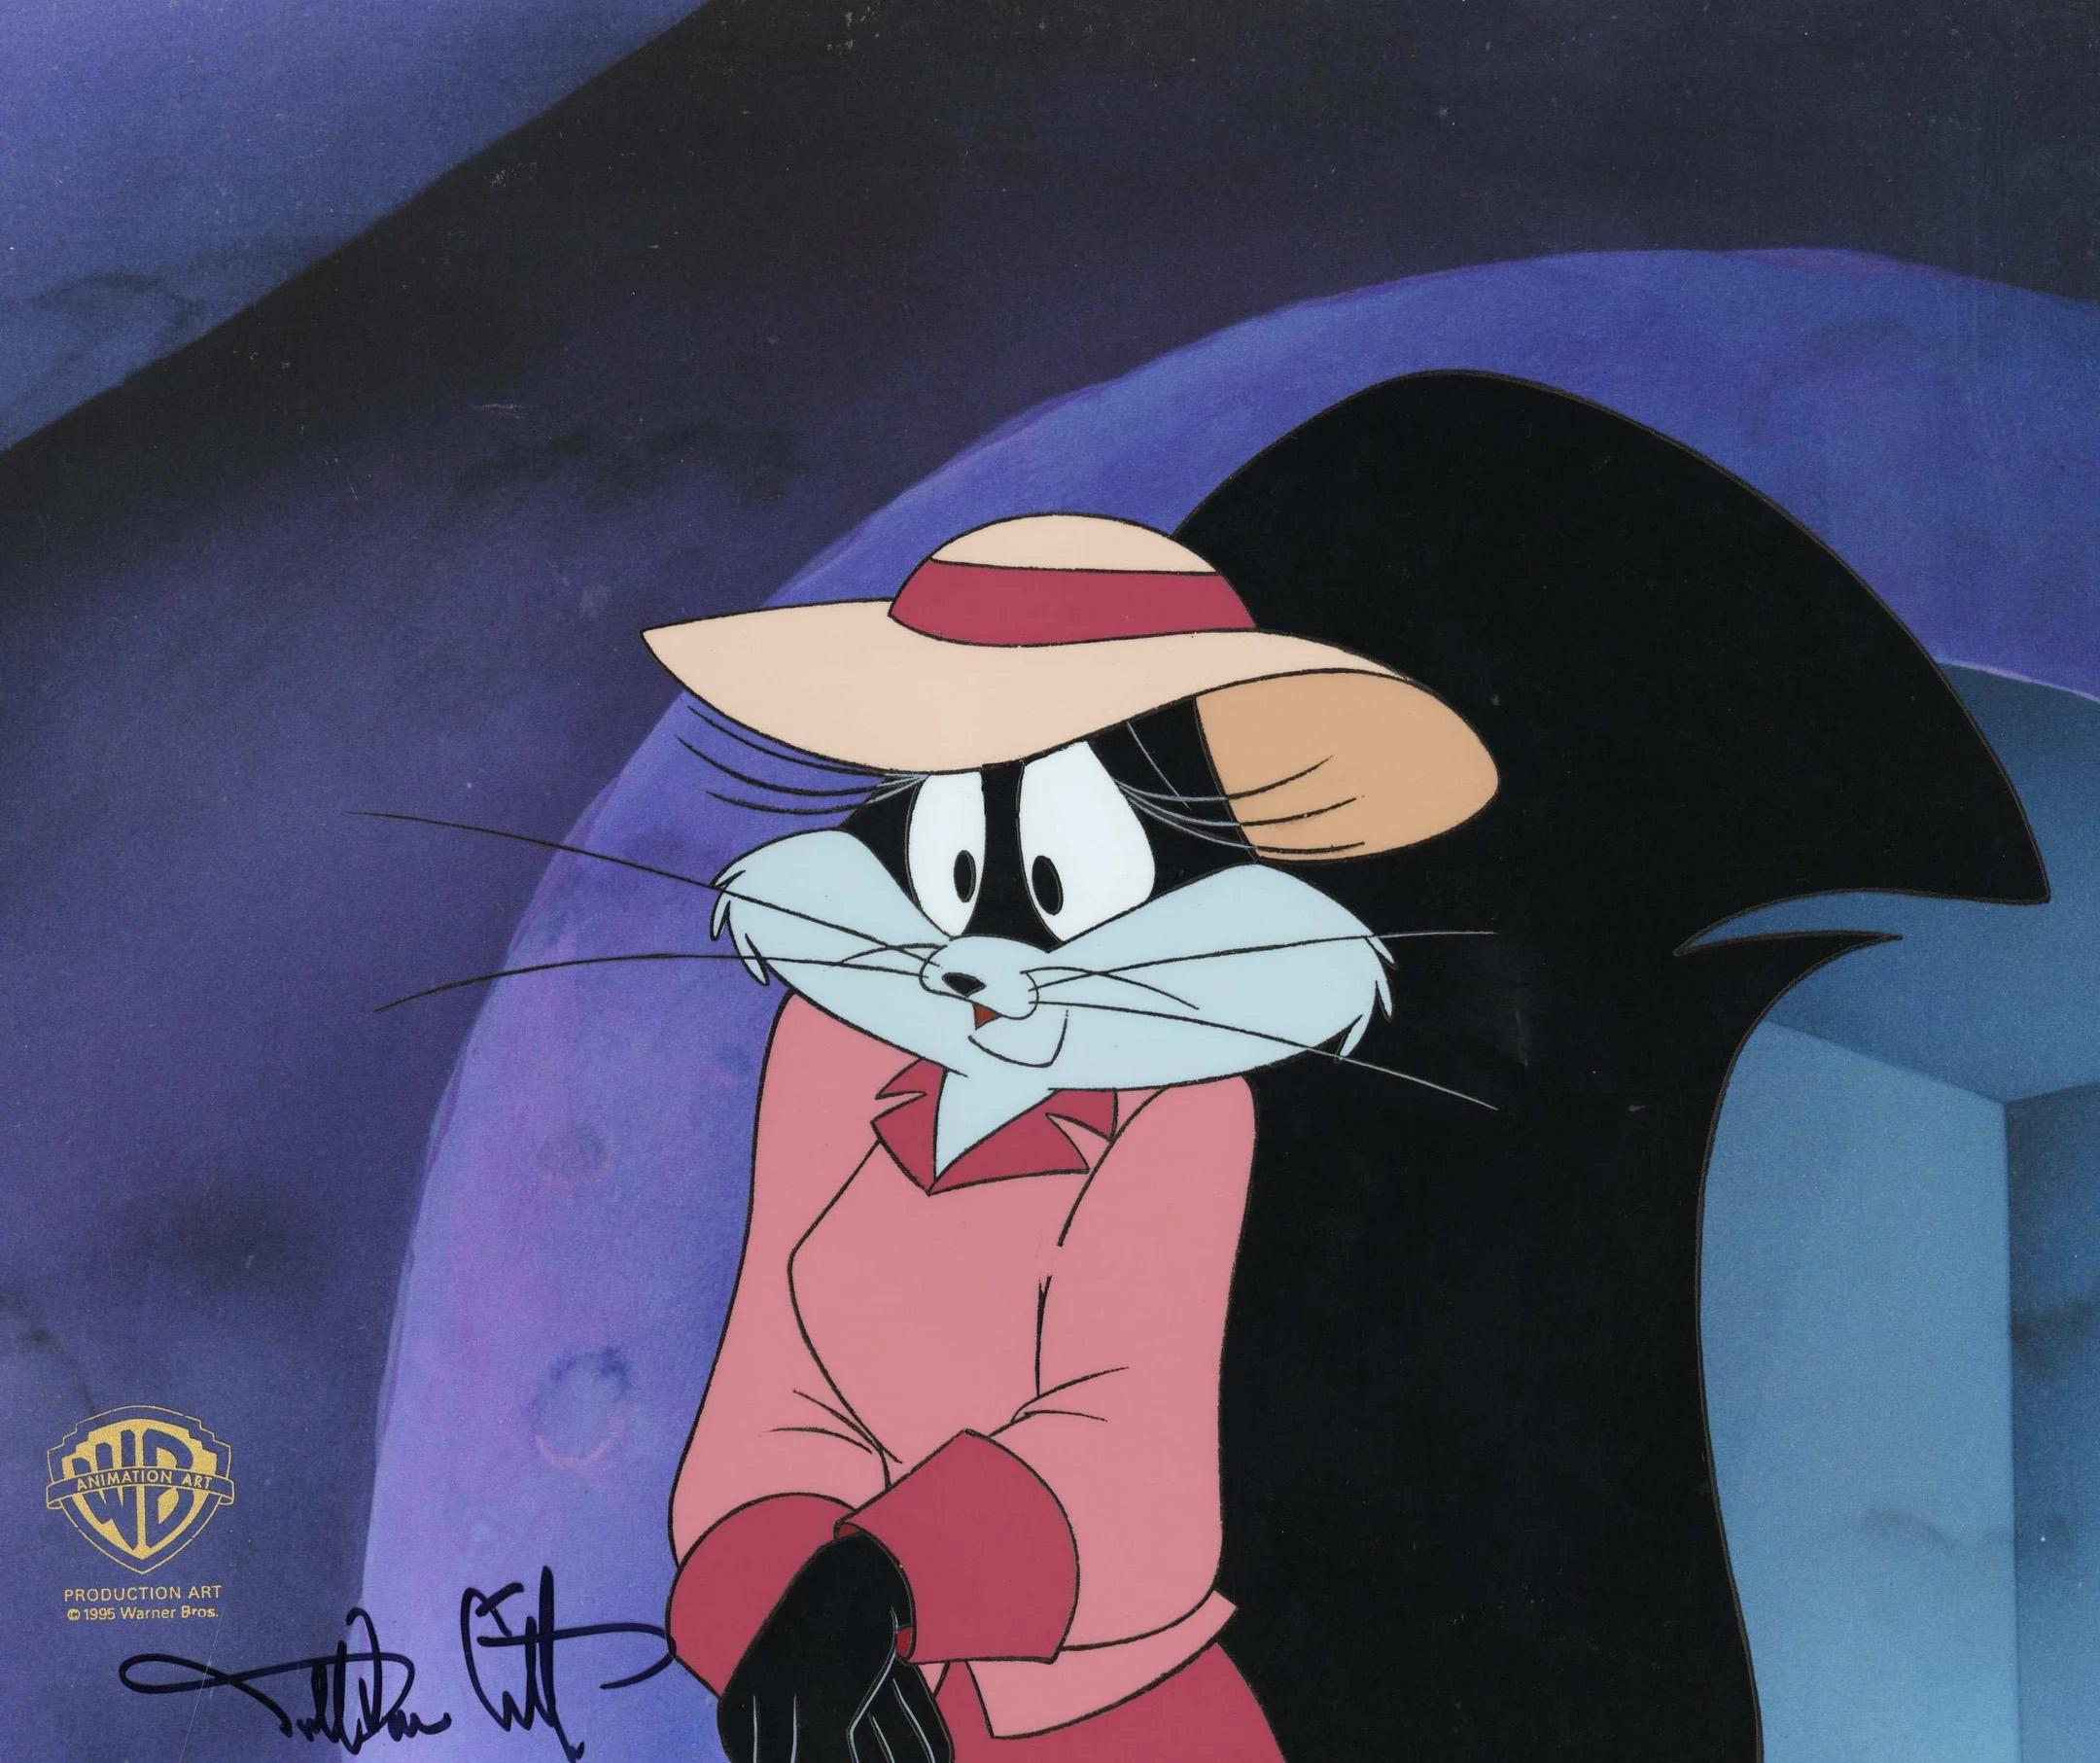 MEDIUM: Originalproduktion Cel
PRODUKTION: Looney Tunes
BILDGRÖSSE: 11,5 x 9
SKU: IFA8040
GEZEICHNET: Darrel Van Citters

ÜBER DAS BILD: Looney Tunes ist eine Serie von animierten Kurzfilmen von Warner Bros. Sie wurde von 1930 bis 1969 während des